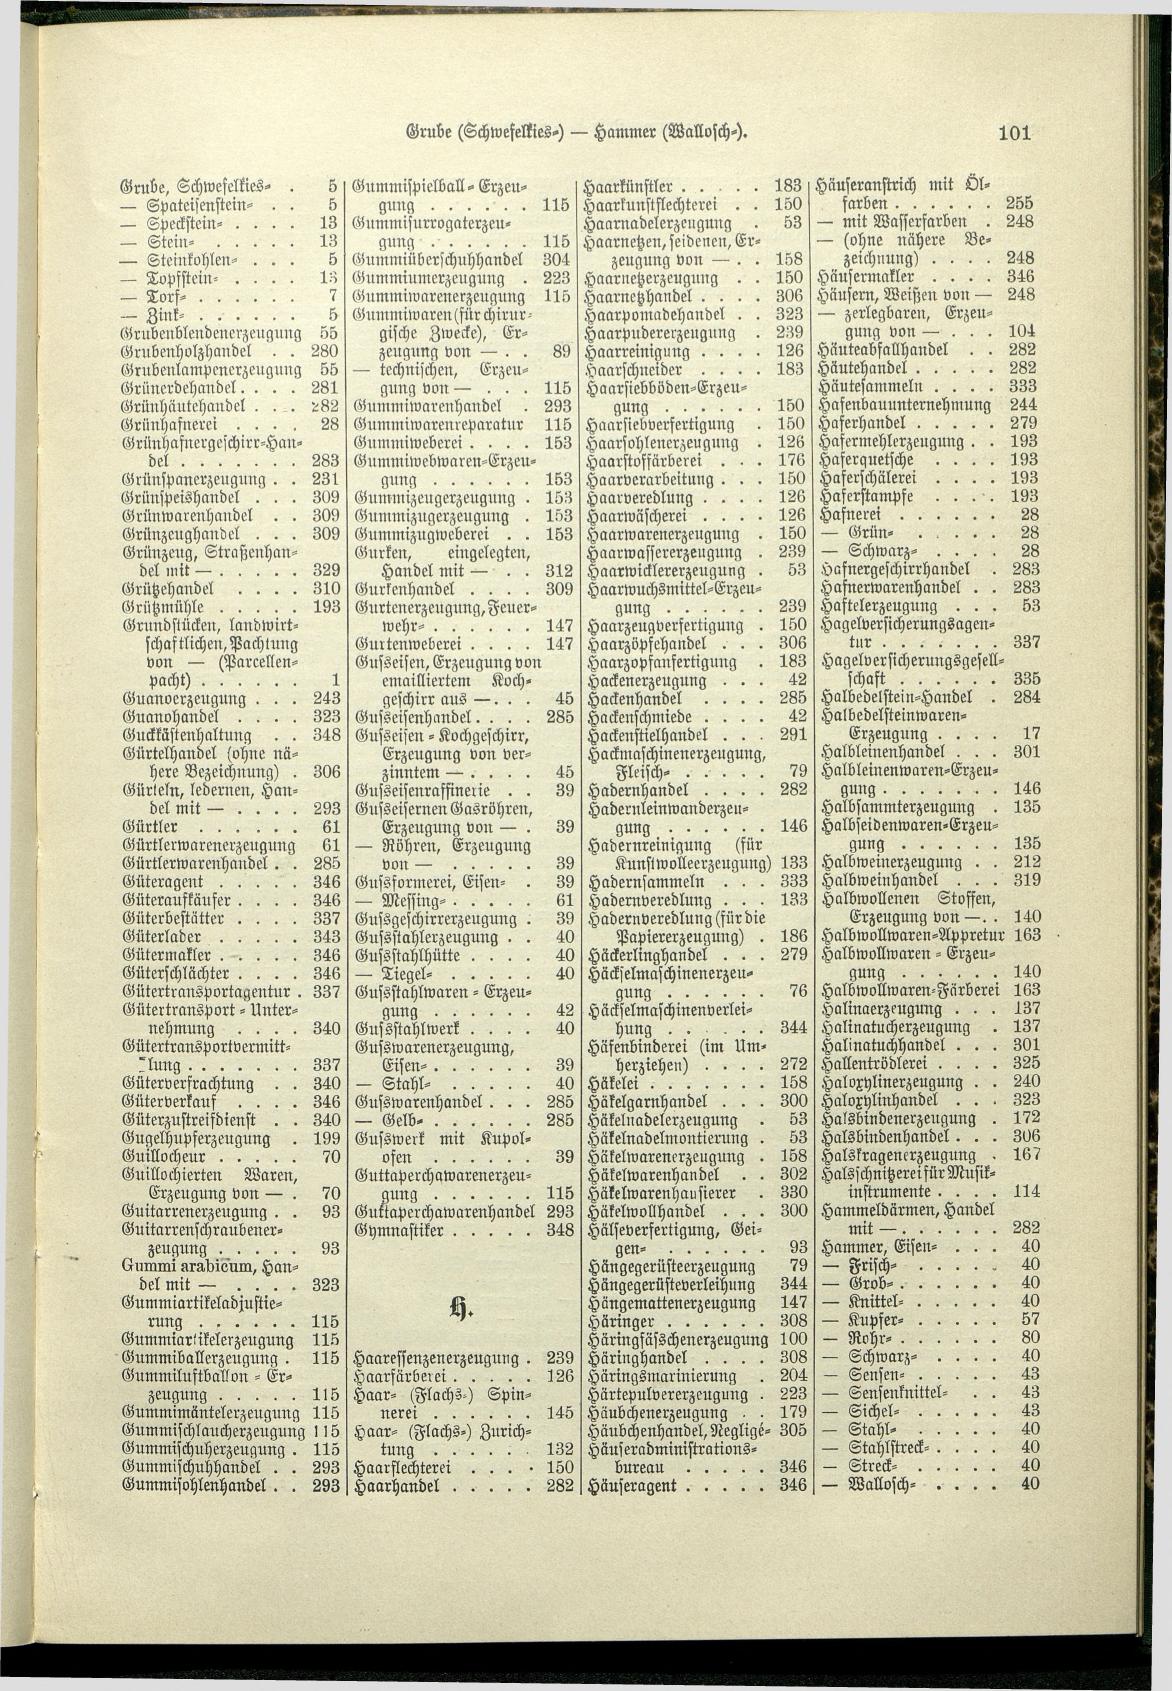 Verzeichnis der Gewerbe der im Reichsrathe vertretenen Königreiche und Länder 1900 - Page 105